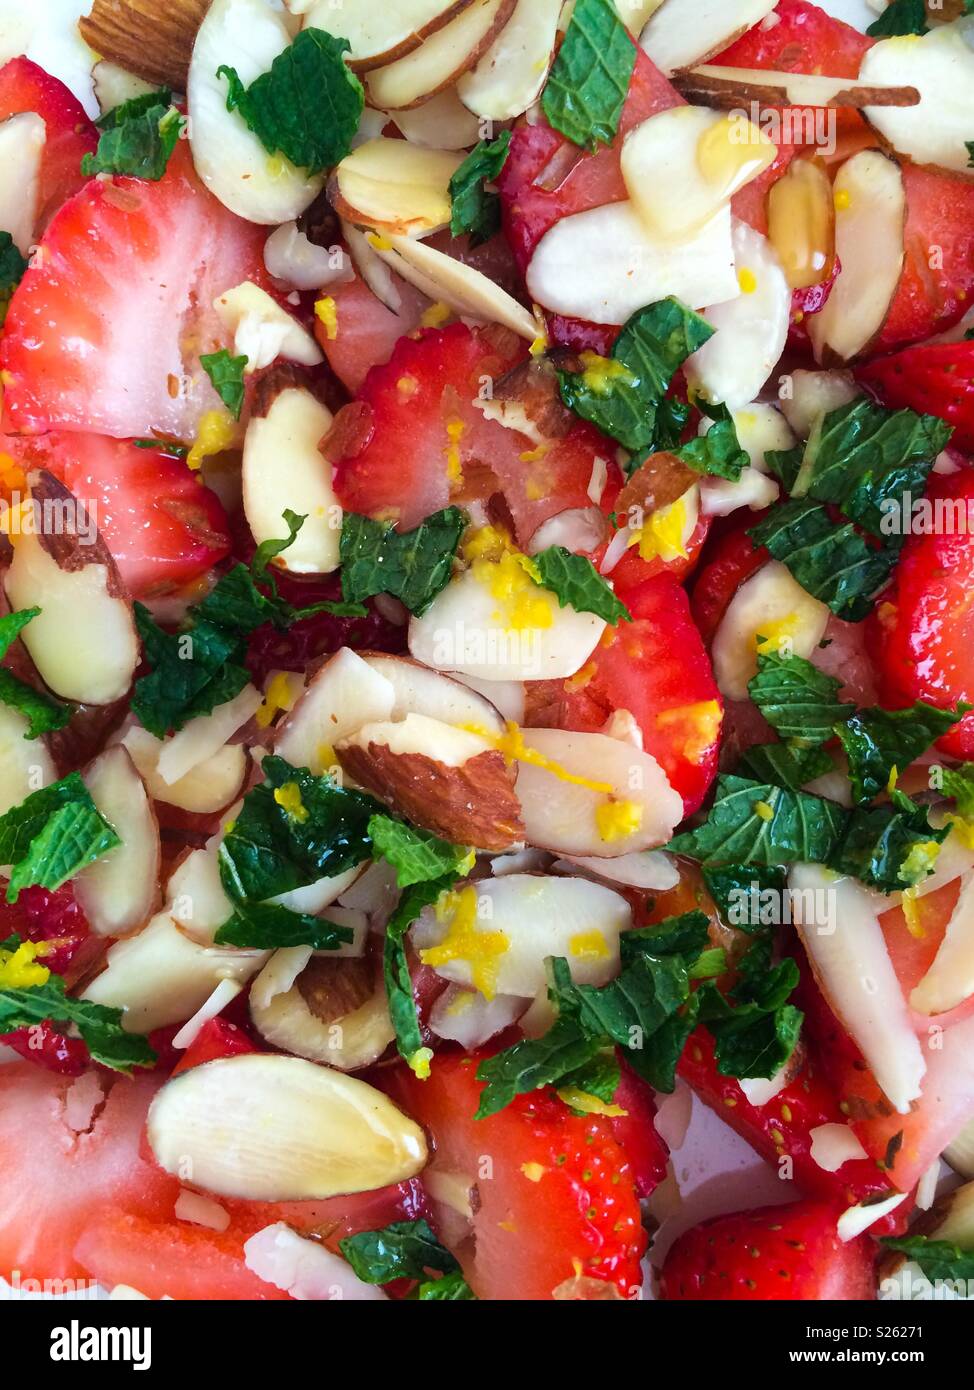 Superfood salade de fruits avec des fraises, amandes, de menthe et de zeste de citron Banque D'Images